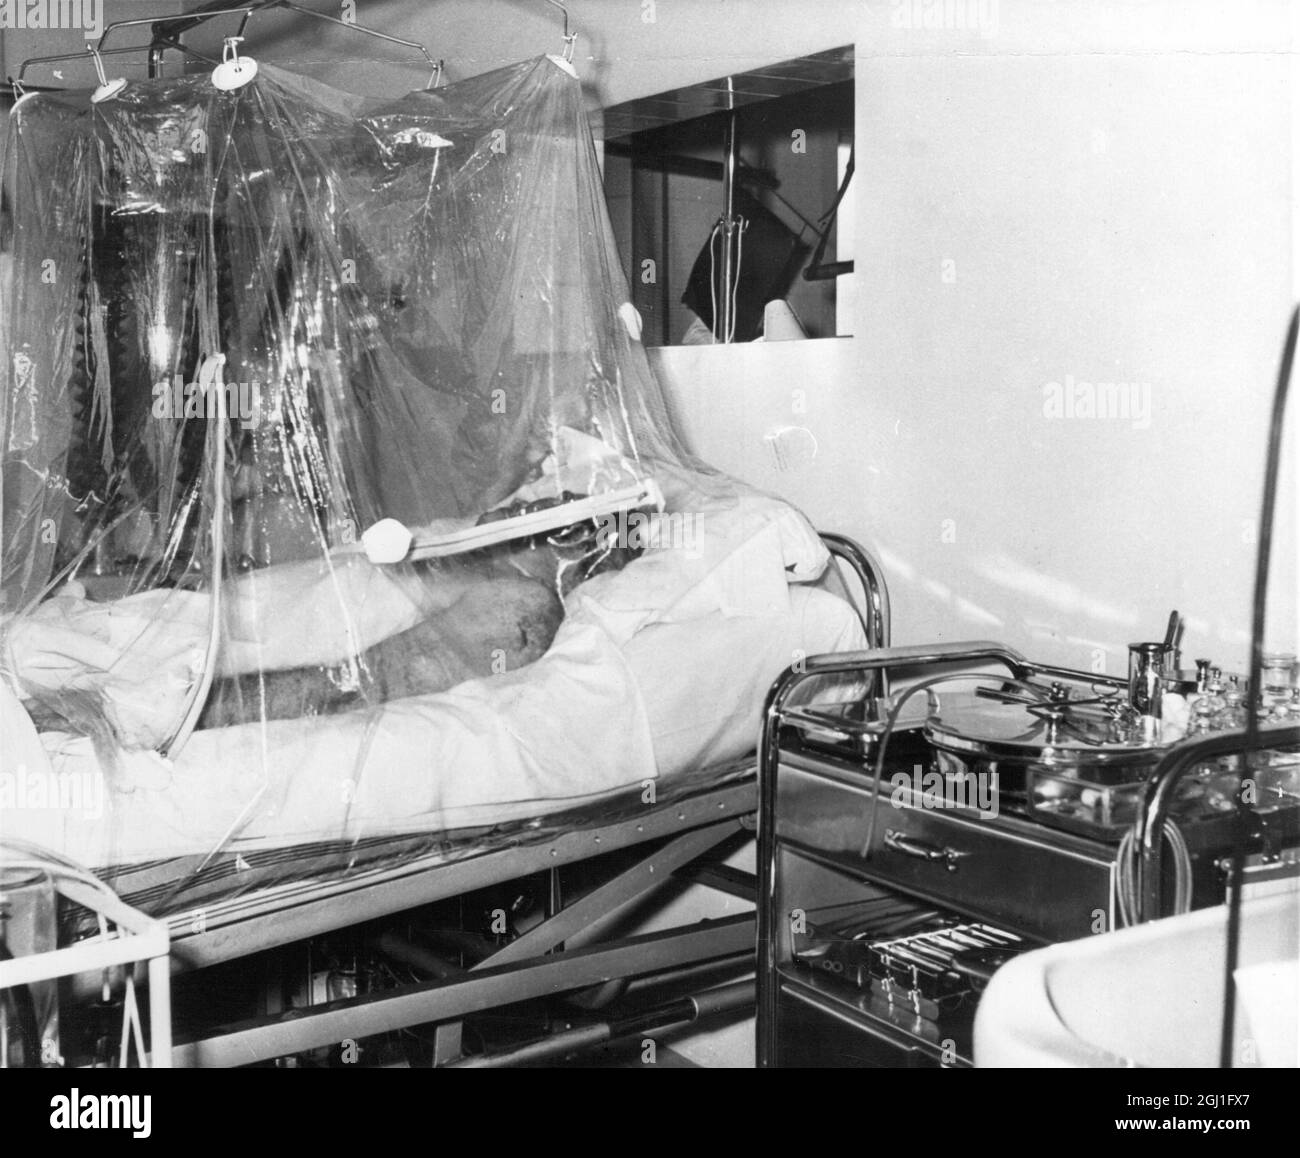 M. Busby a été retiré de la liste des dangers . Matt Busby, directeur de Manchester United, dans sa tente à oxygène dans un hôpital de Munich , où il progresse lentement après un accident d'avion qui a coûté la vie à huit de son équipe . Février 1958 Banque D'Images